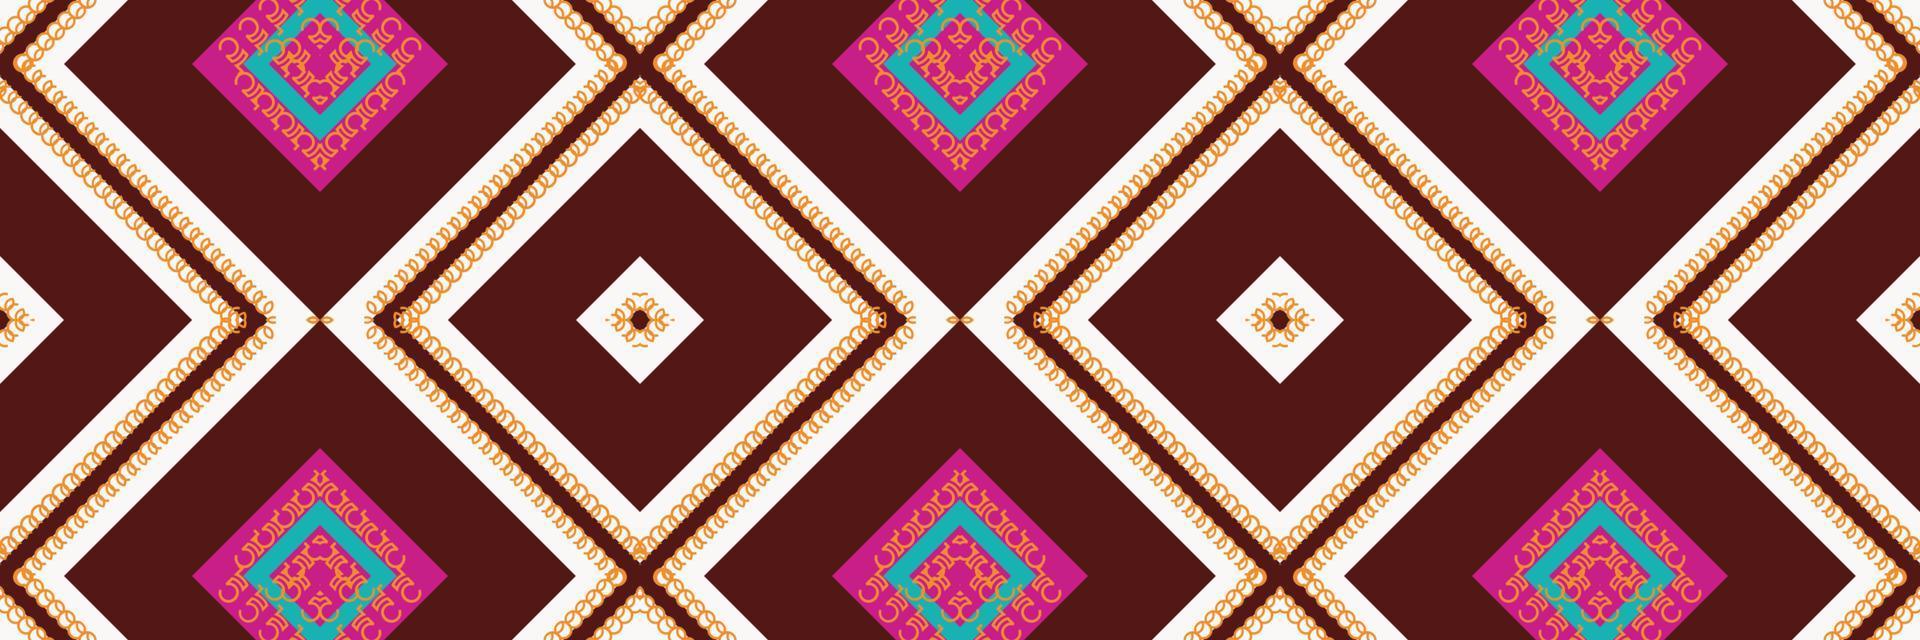 padrão étnico indiano ikat. tapetes estampados tradicionais é um padrão criado pela combinação de formas geométricas. projeto para impressão. usando na indústria da moda. vetor